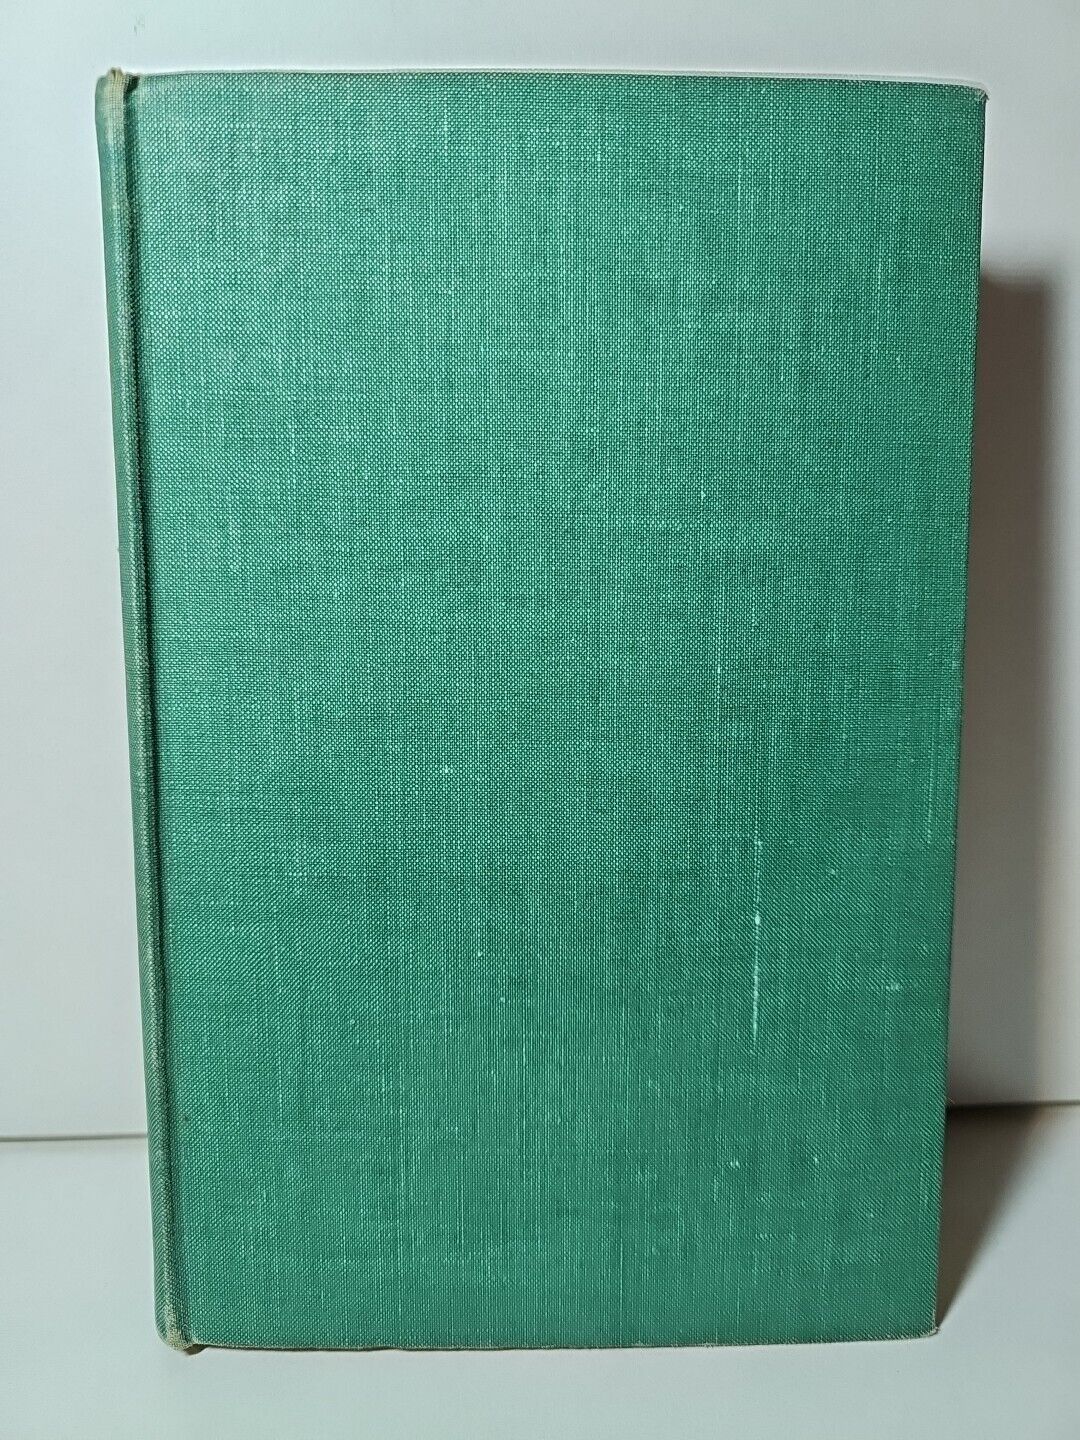 Green Medicine by C F Leyel (1952)